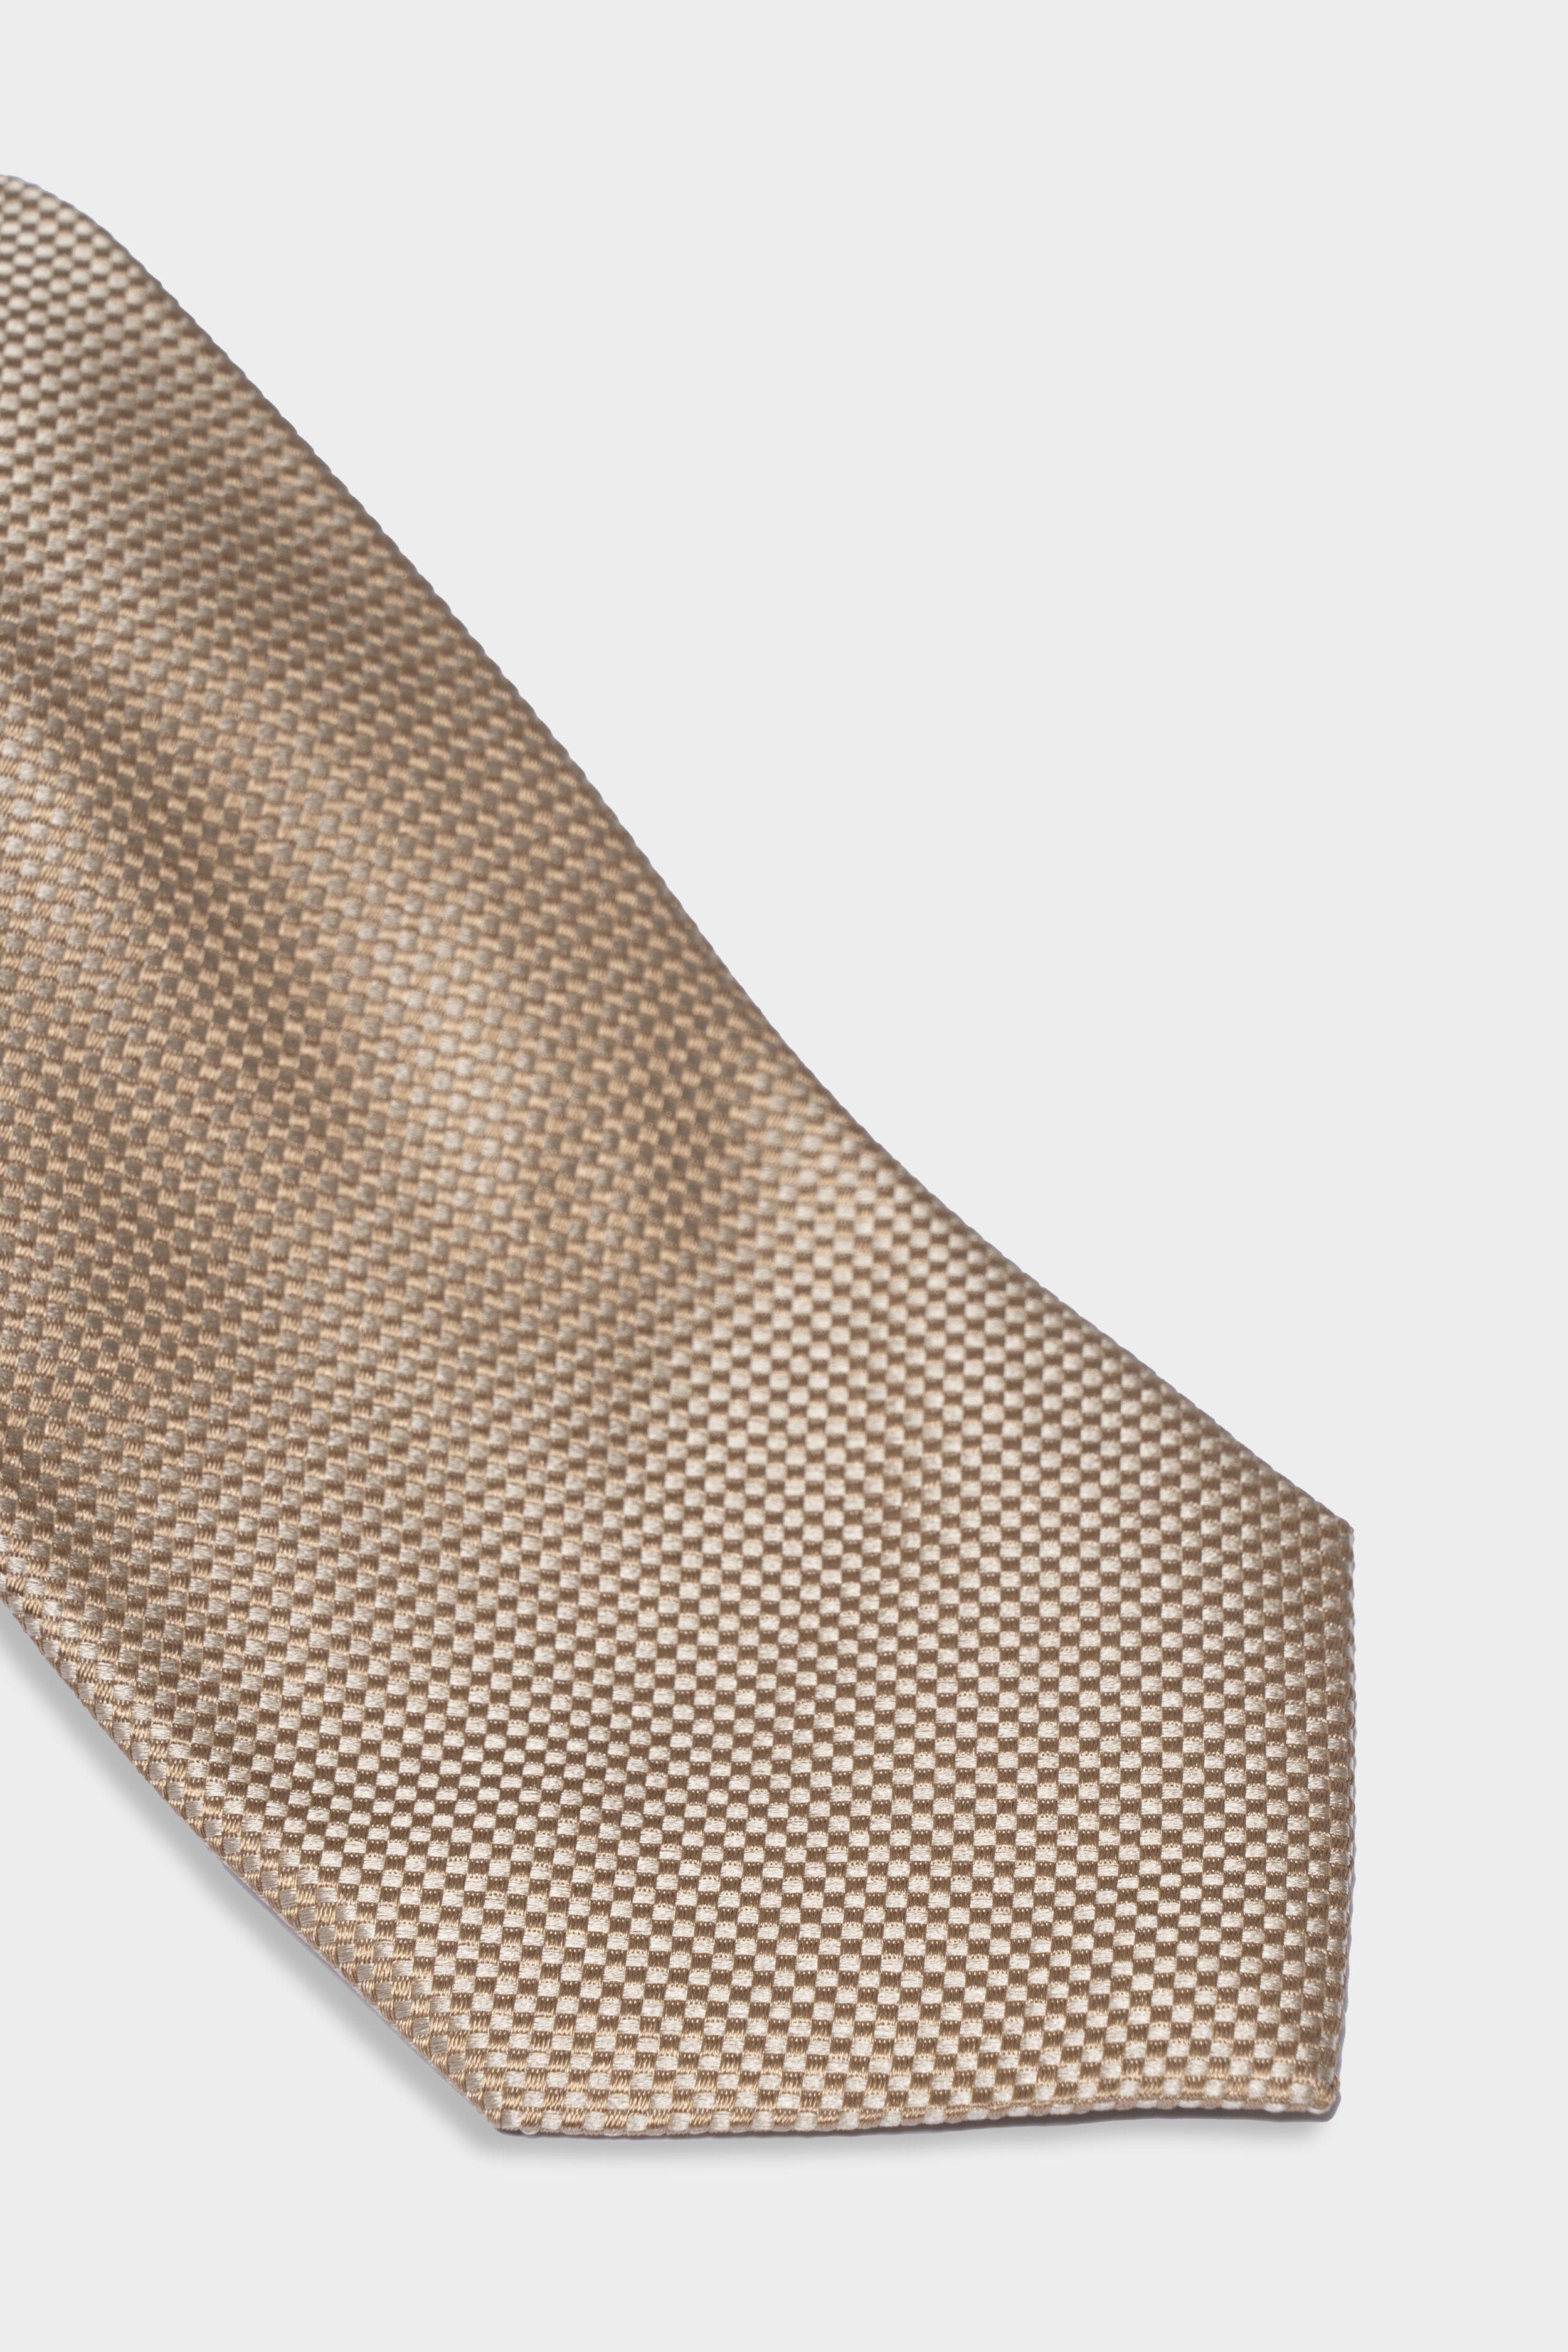 Cravatta in seta microfantasia - BEIGE